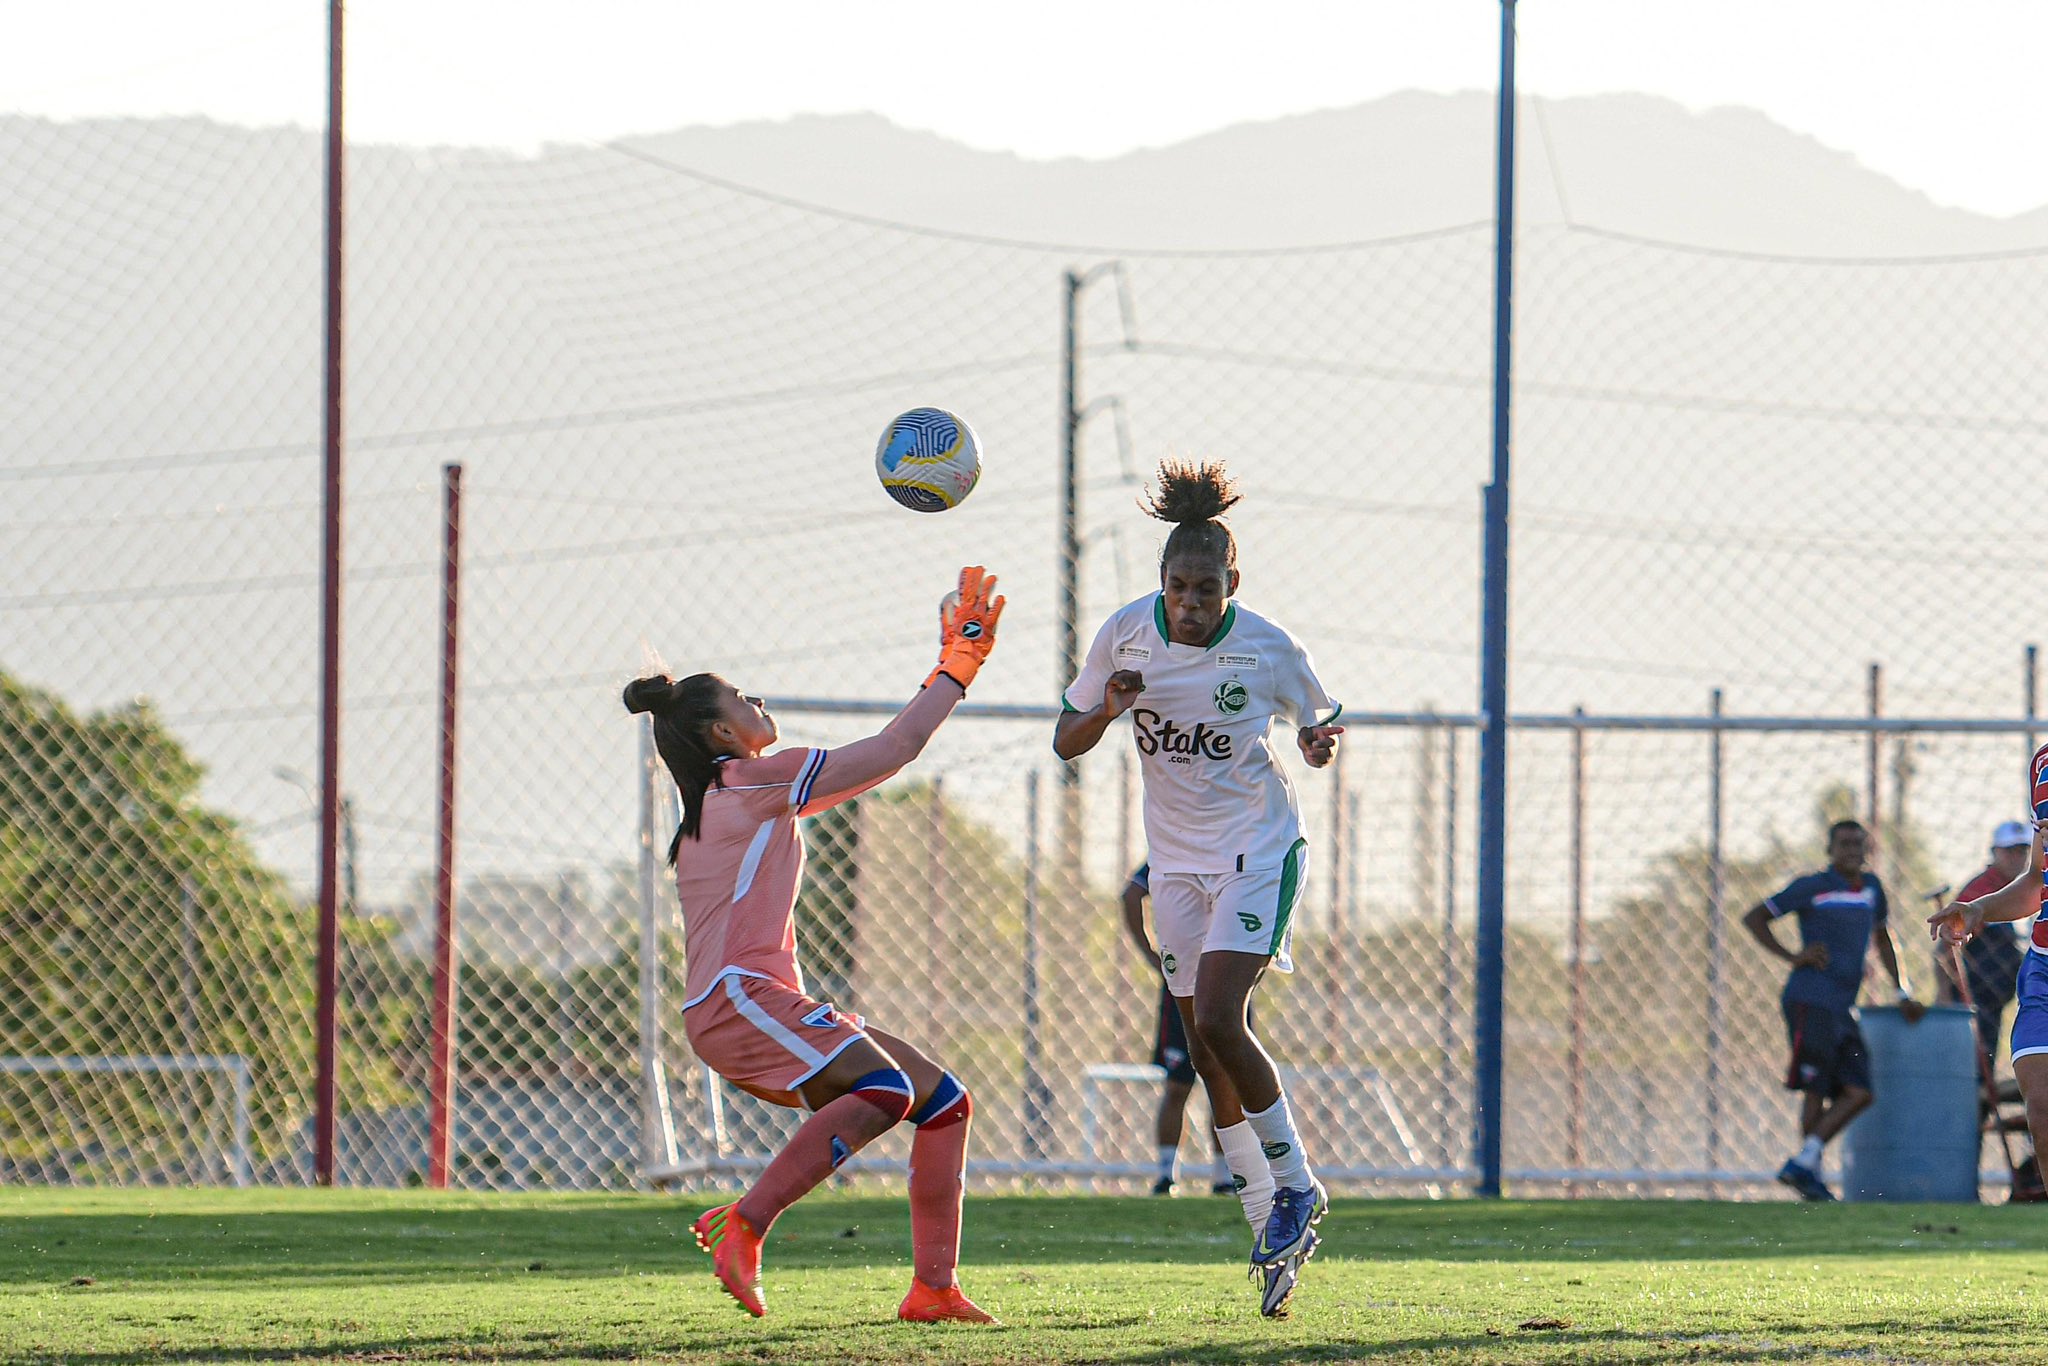 Thalita antecipa a goleira Renata para marcar o gol. (Foto: Nathan Bizotto/EC Juventude)